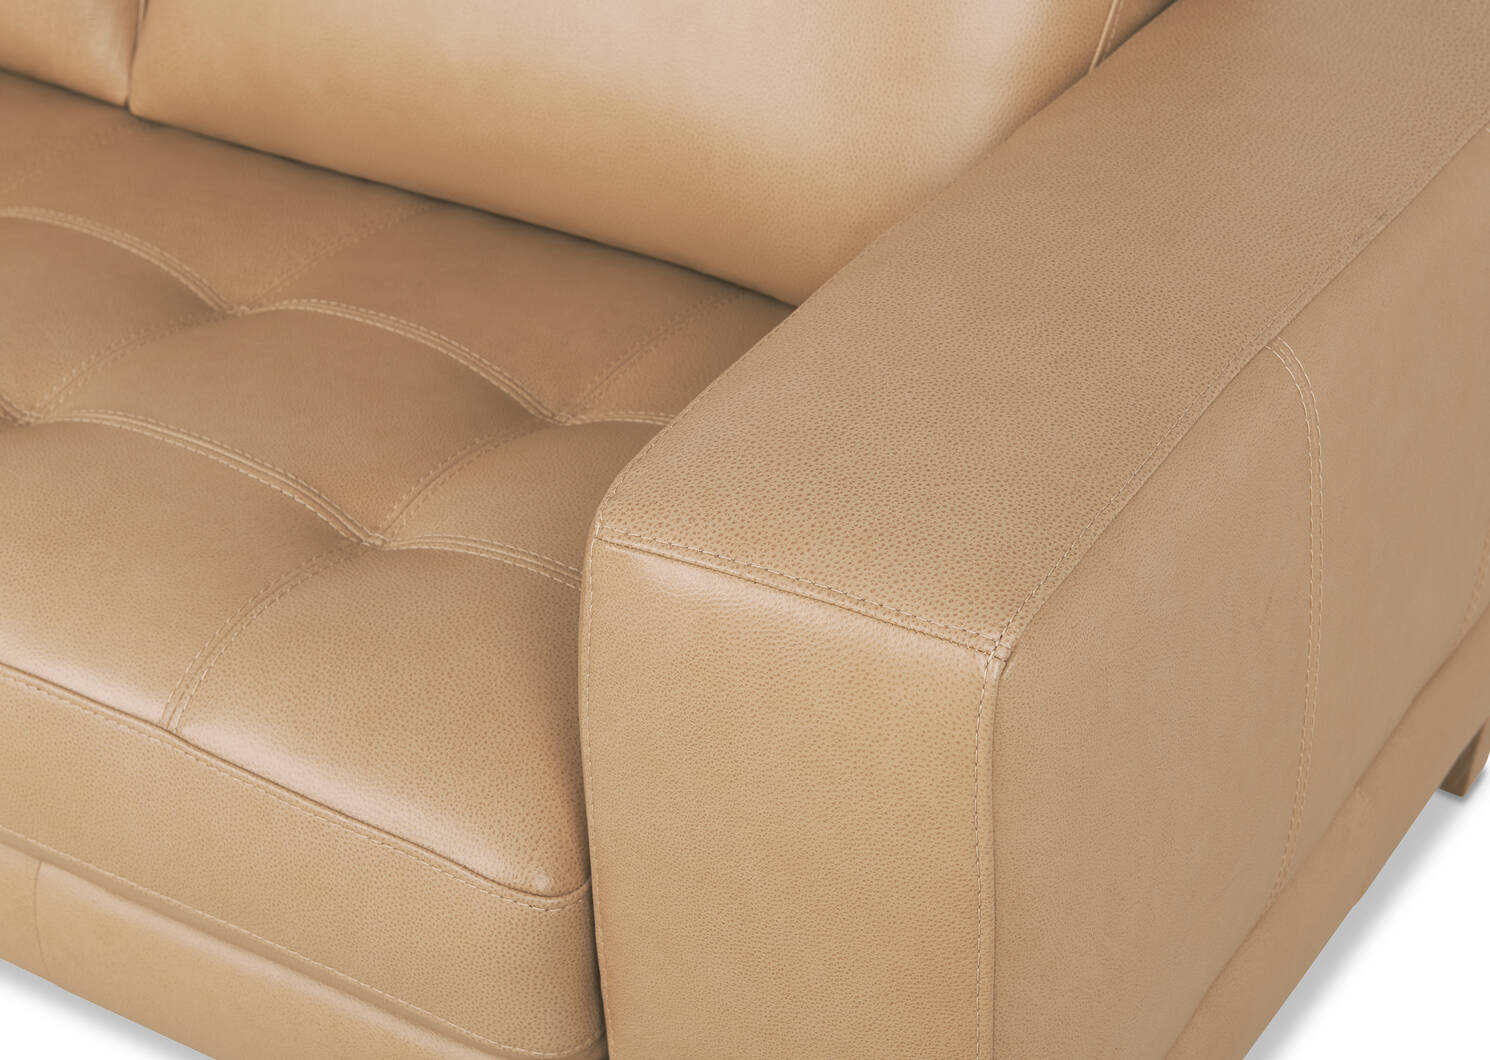 Carson Leather Sofa Chaise LCF -Zen Ston